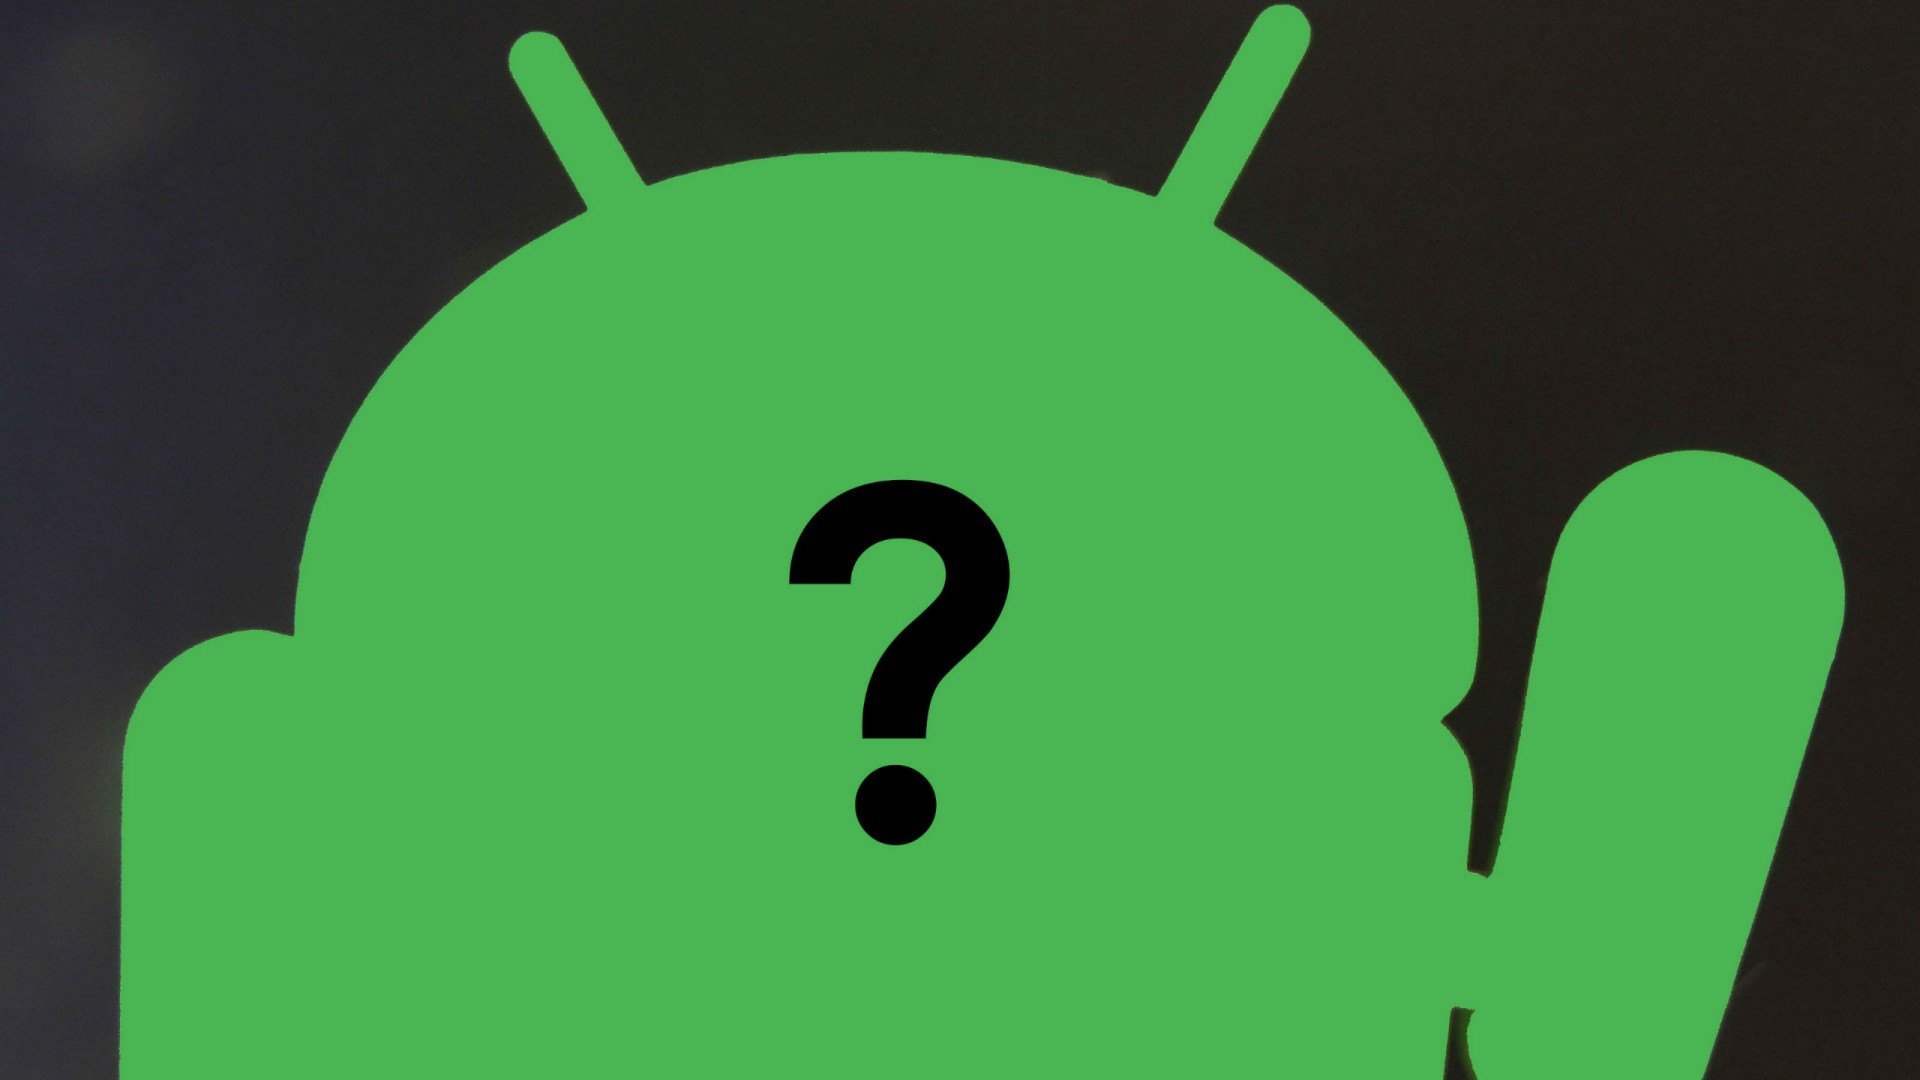 หรือว่า Android N จะใช้ชื่อว่า “Nori”